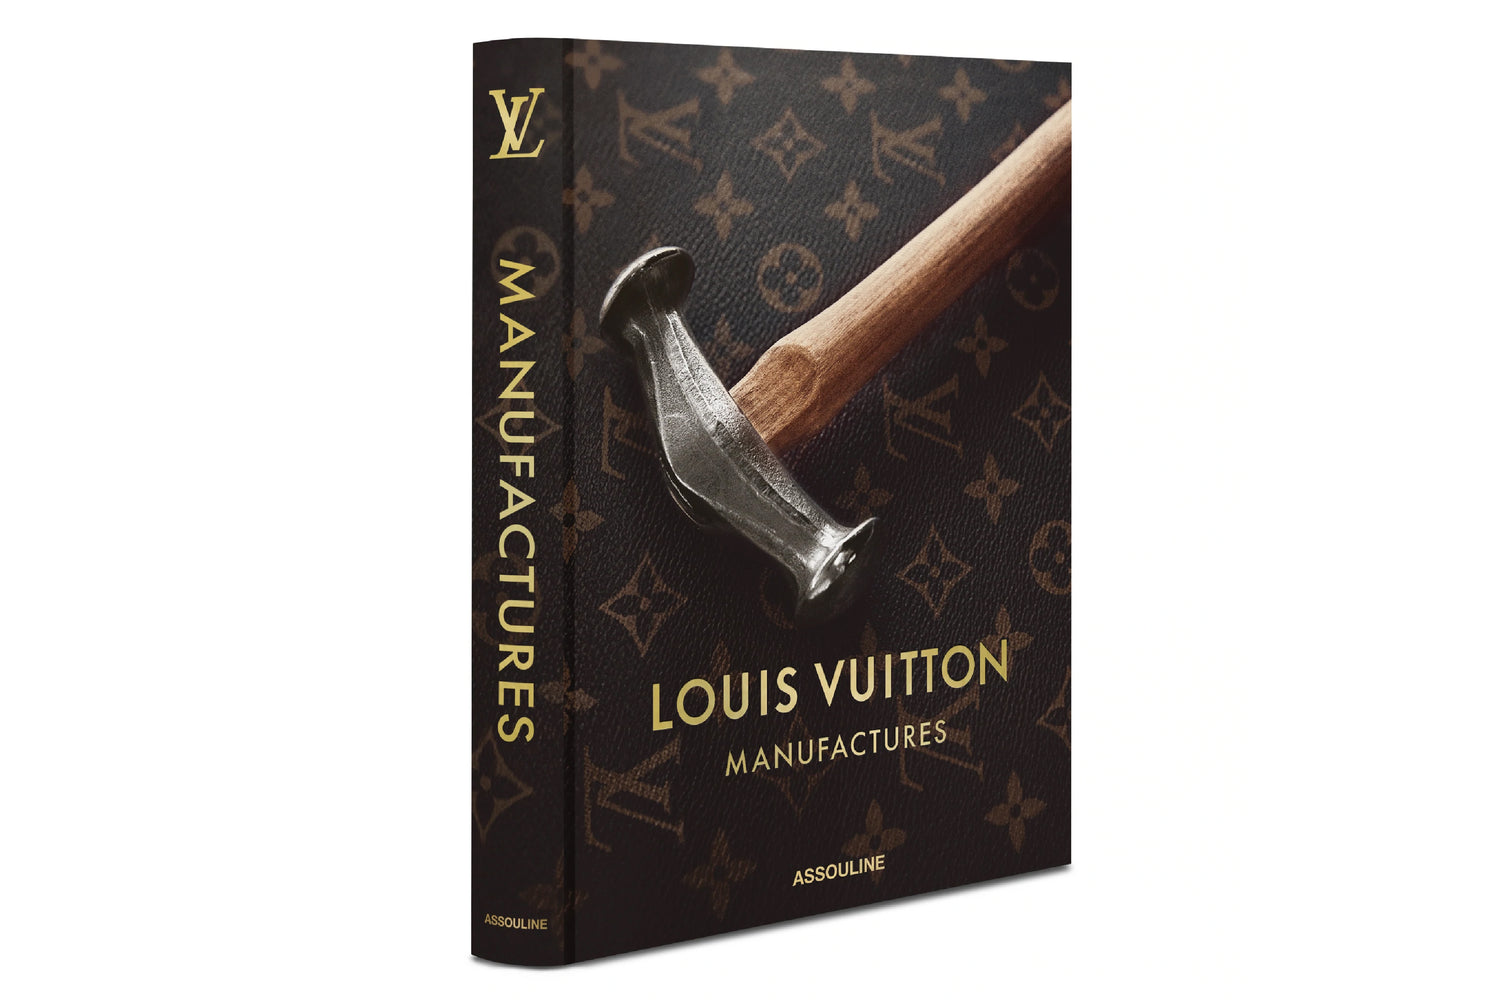 Louis Vuitton, The Birth of Modern Luxury - Korean version - Luxury Other